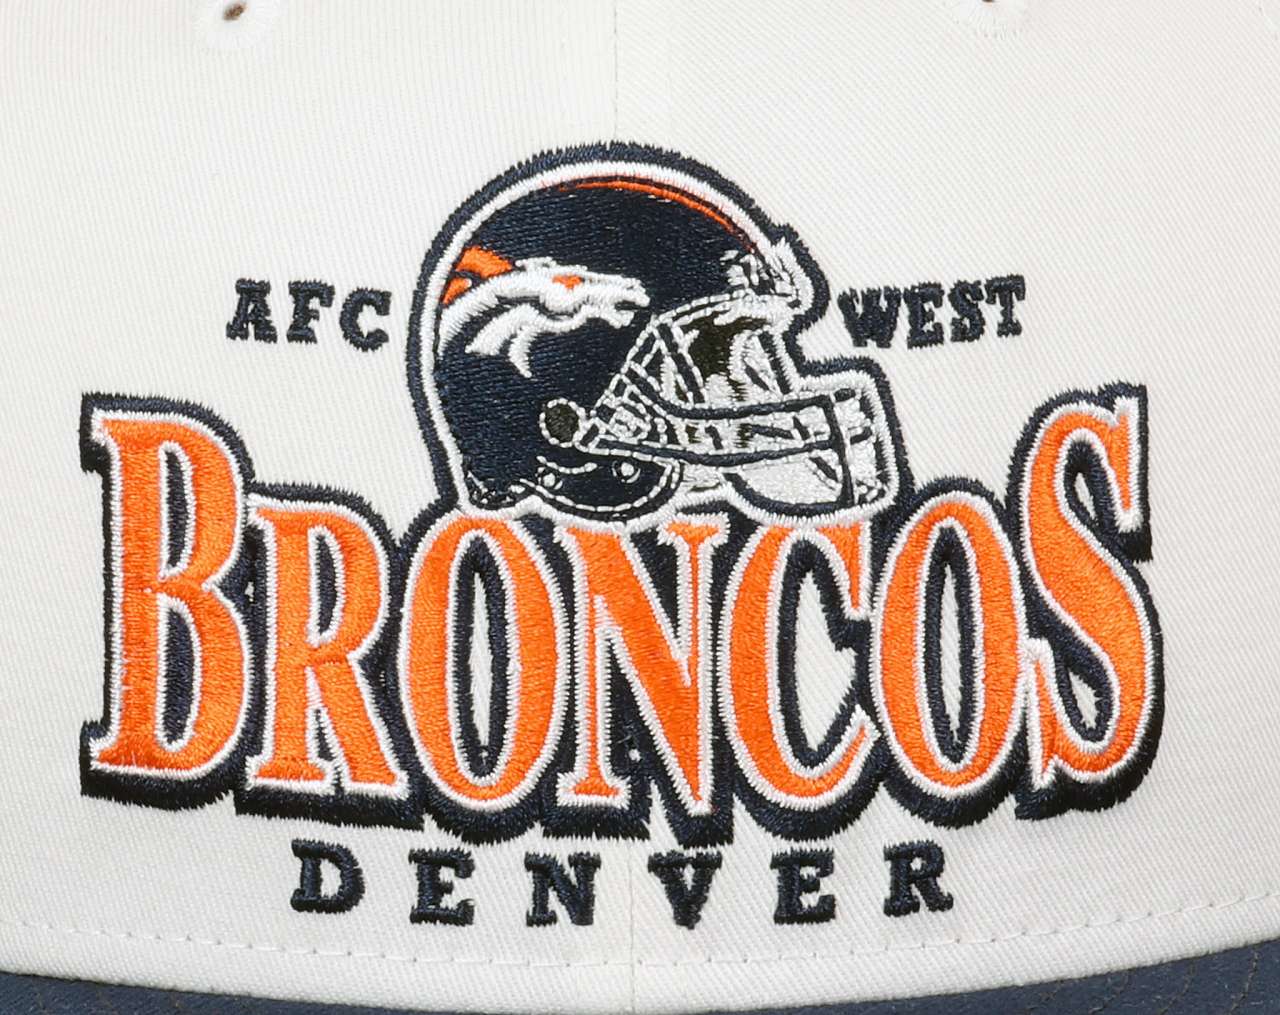 Denver Broncos NFL White Original Teamcolour Helmet Blue 9Fifty Snapback Cap New Era